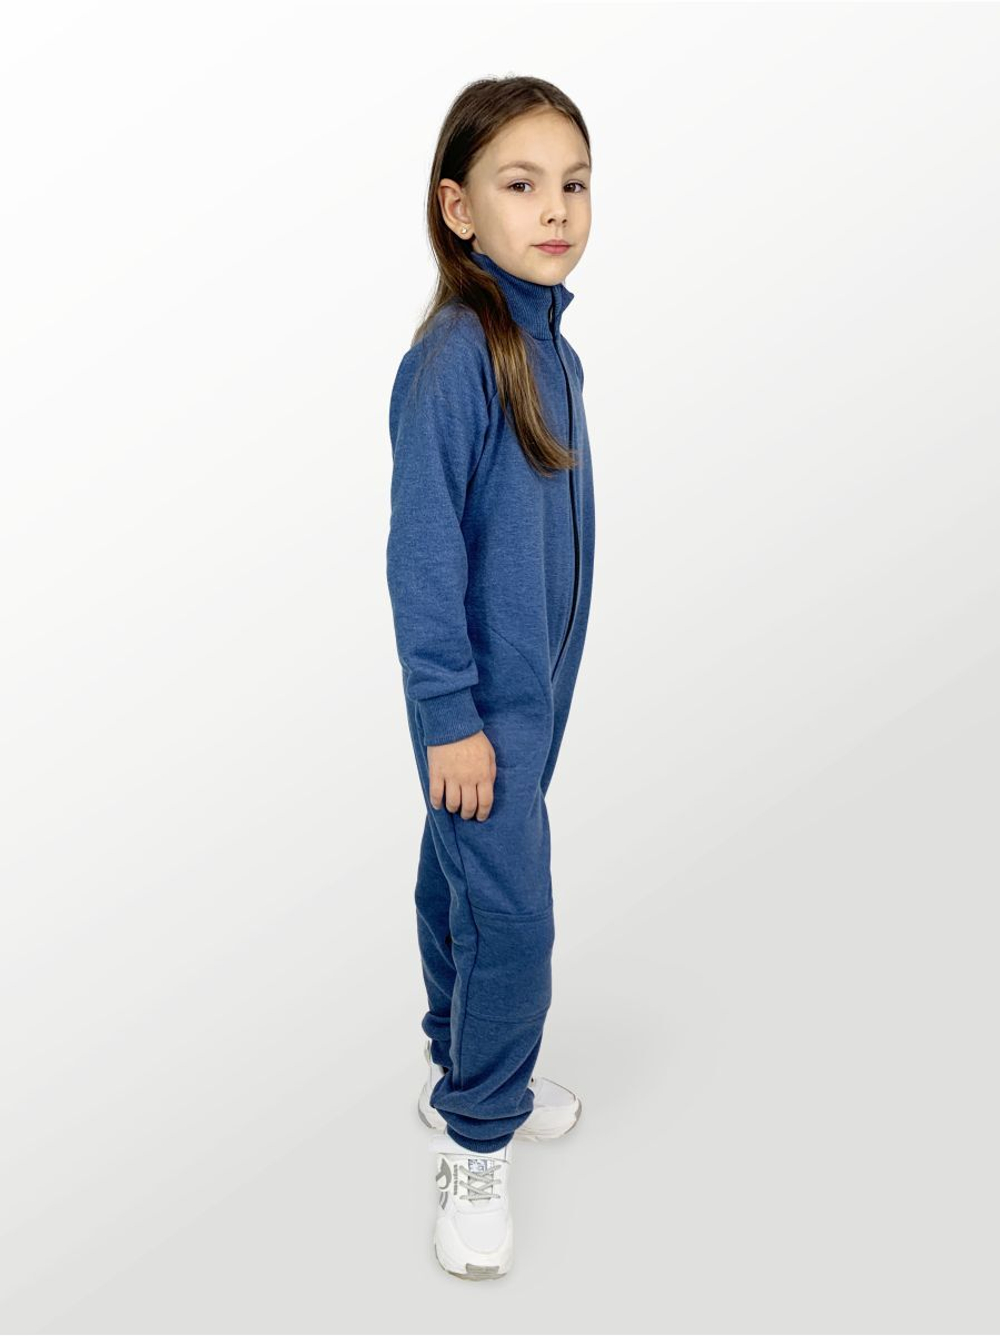 Комбинезон для детей, модель №1, рост 104 см, синий